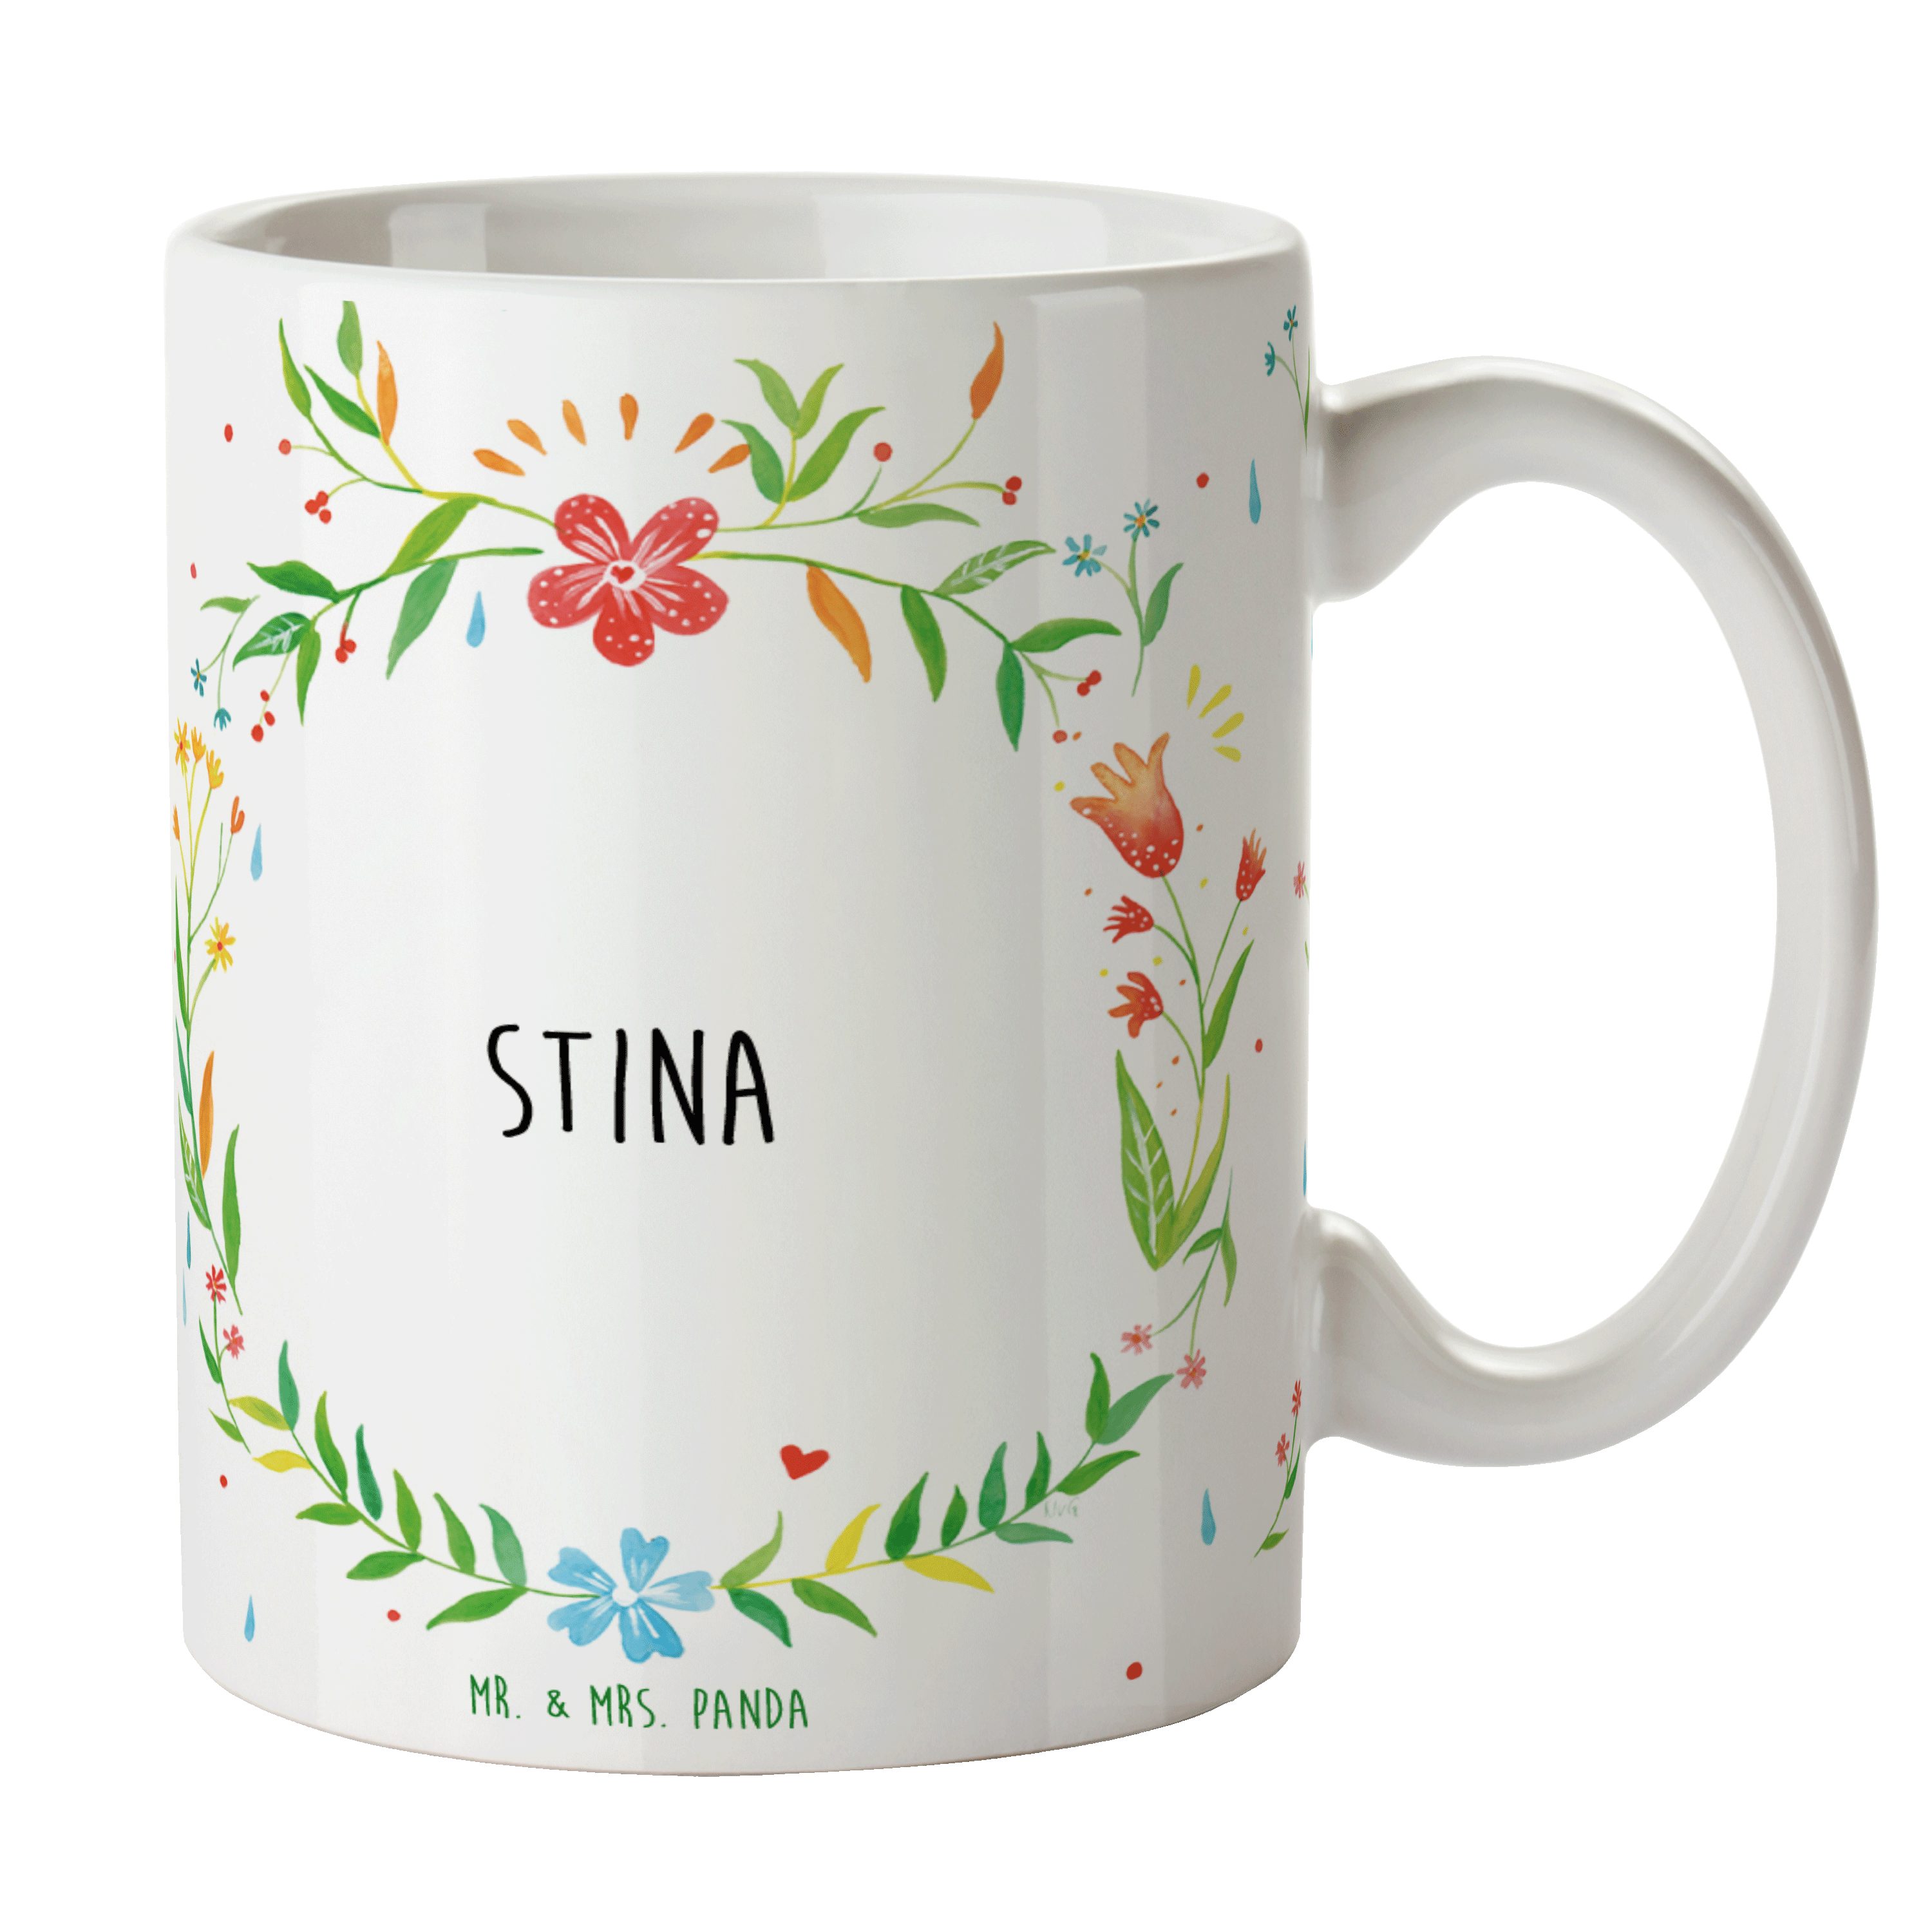 Mr. & Mrs. Panda Tasse Stina - Geschenk, Kaffeebecher, Tasse, Tasse Motive, Geschenk Tasse, Keramik